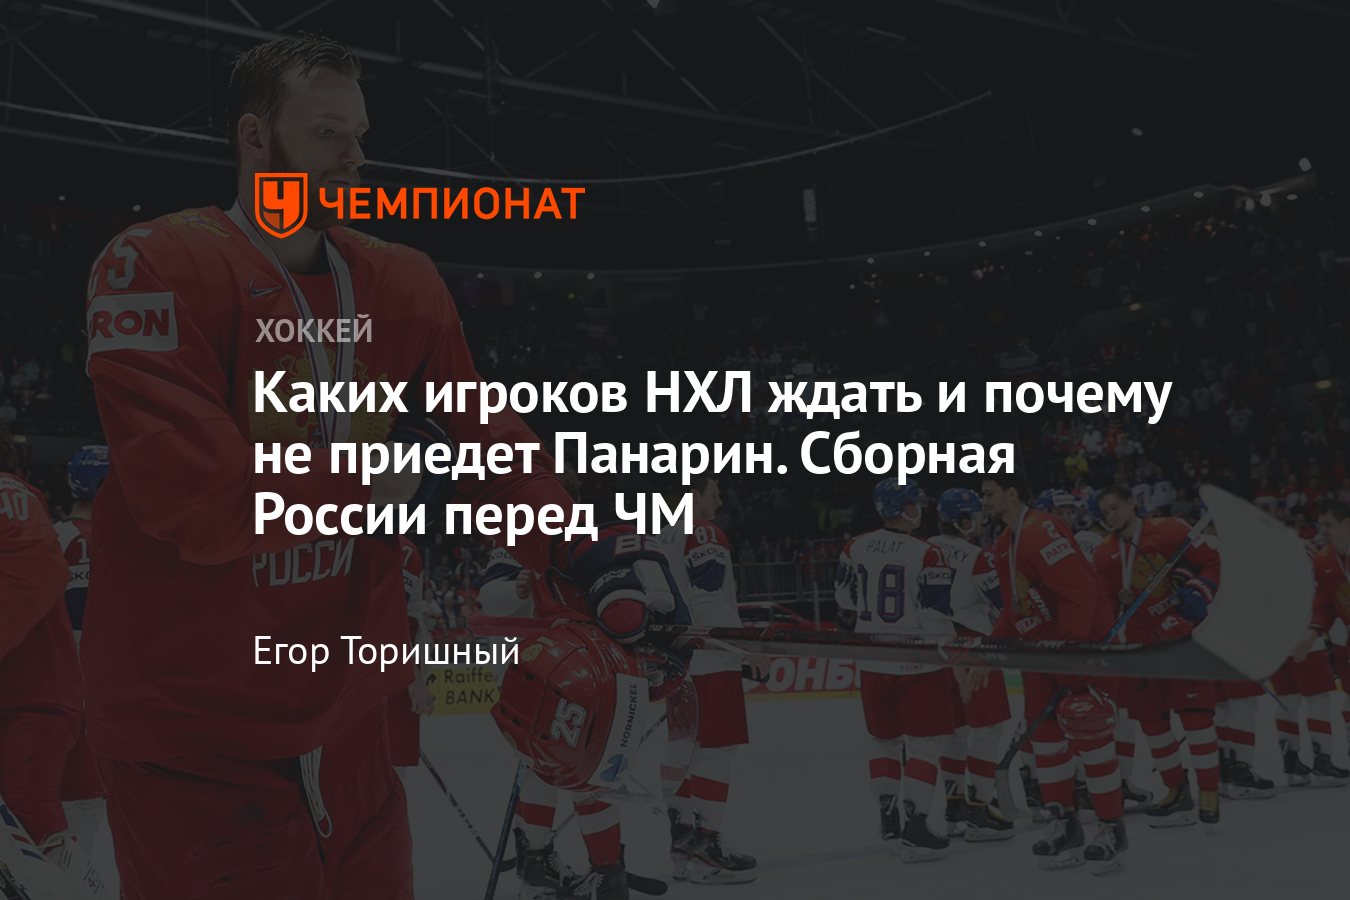 Каким будет состав сборной России по хоккею на чемпионат мира — 2021, приедет Панарин